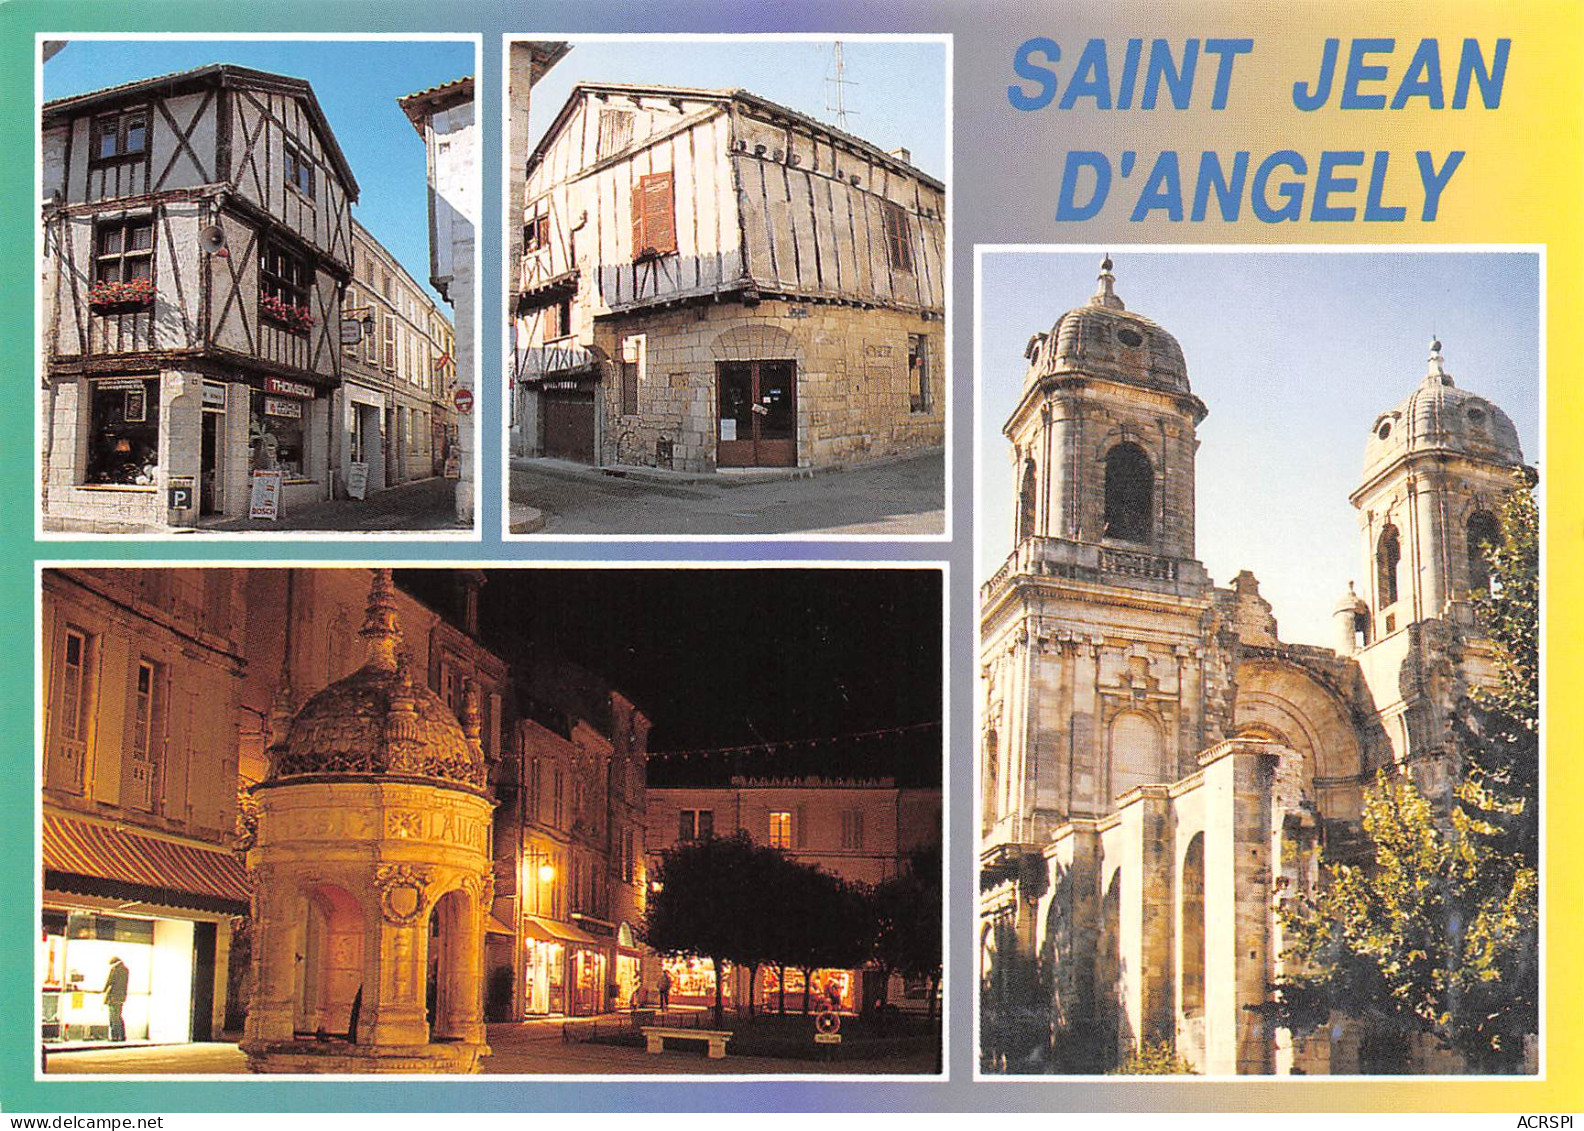   SAINT JEAN D'ANGELY Maisons à Colombages, Les Tours De L'abbatiale La Fontaine Du Pilori 13 (scan Recto Verso)MG2839 - Saint-Jean-d'Angely